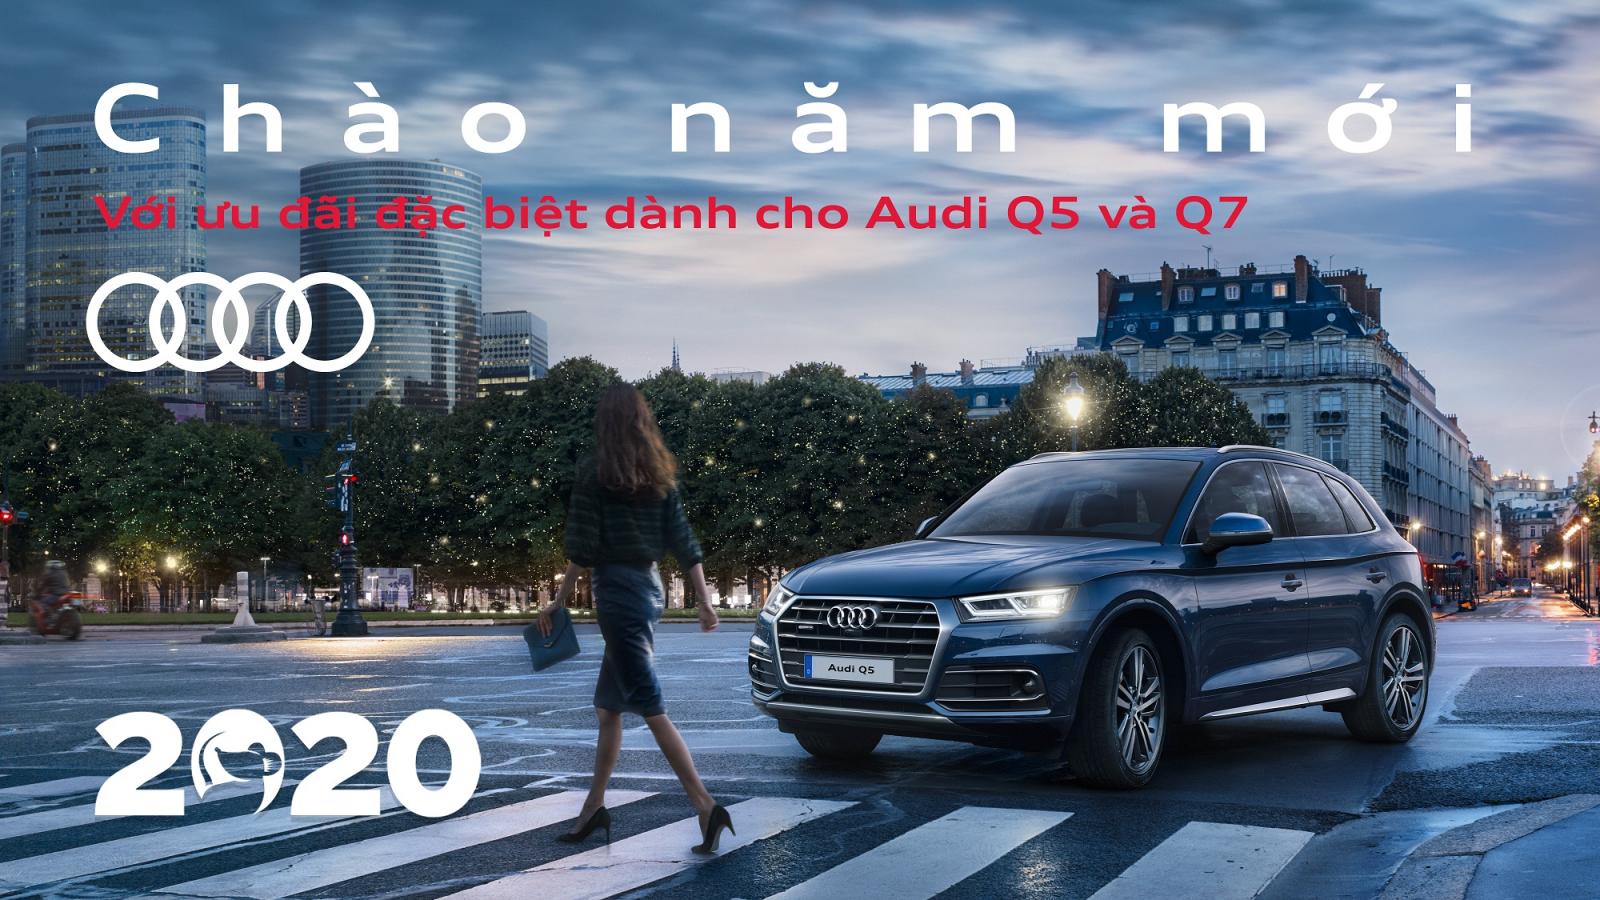 Audi "lì xì" cao nhất 300 triệu cho khách hàng mua Q5 và Q7 a1